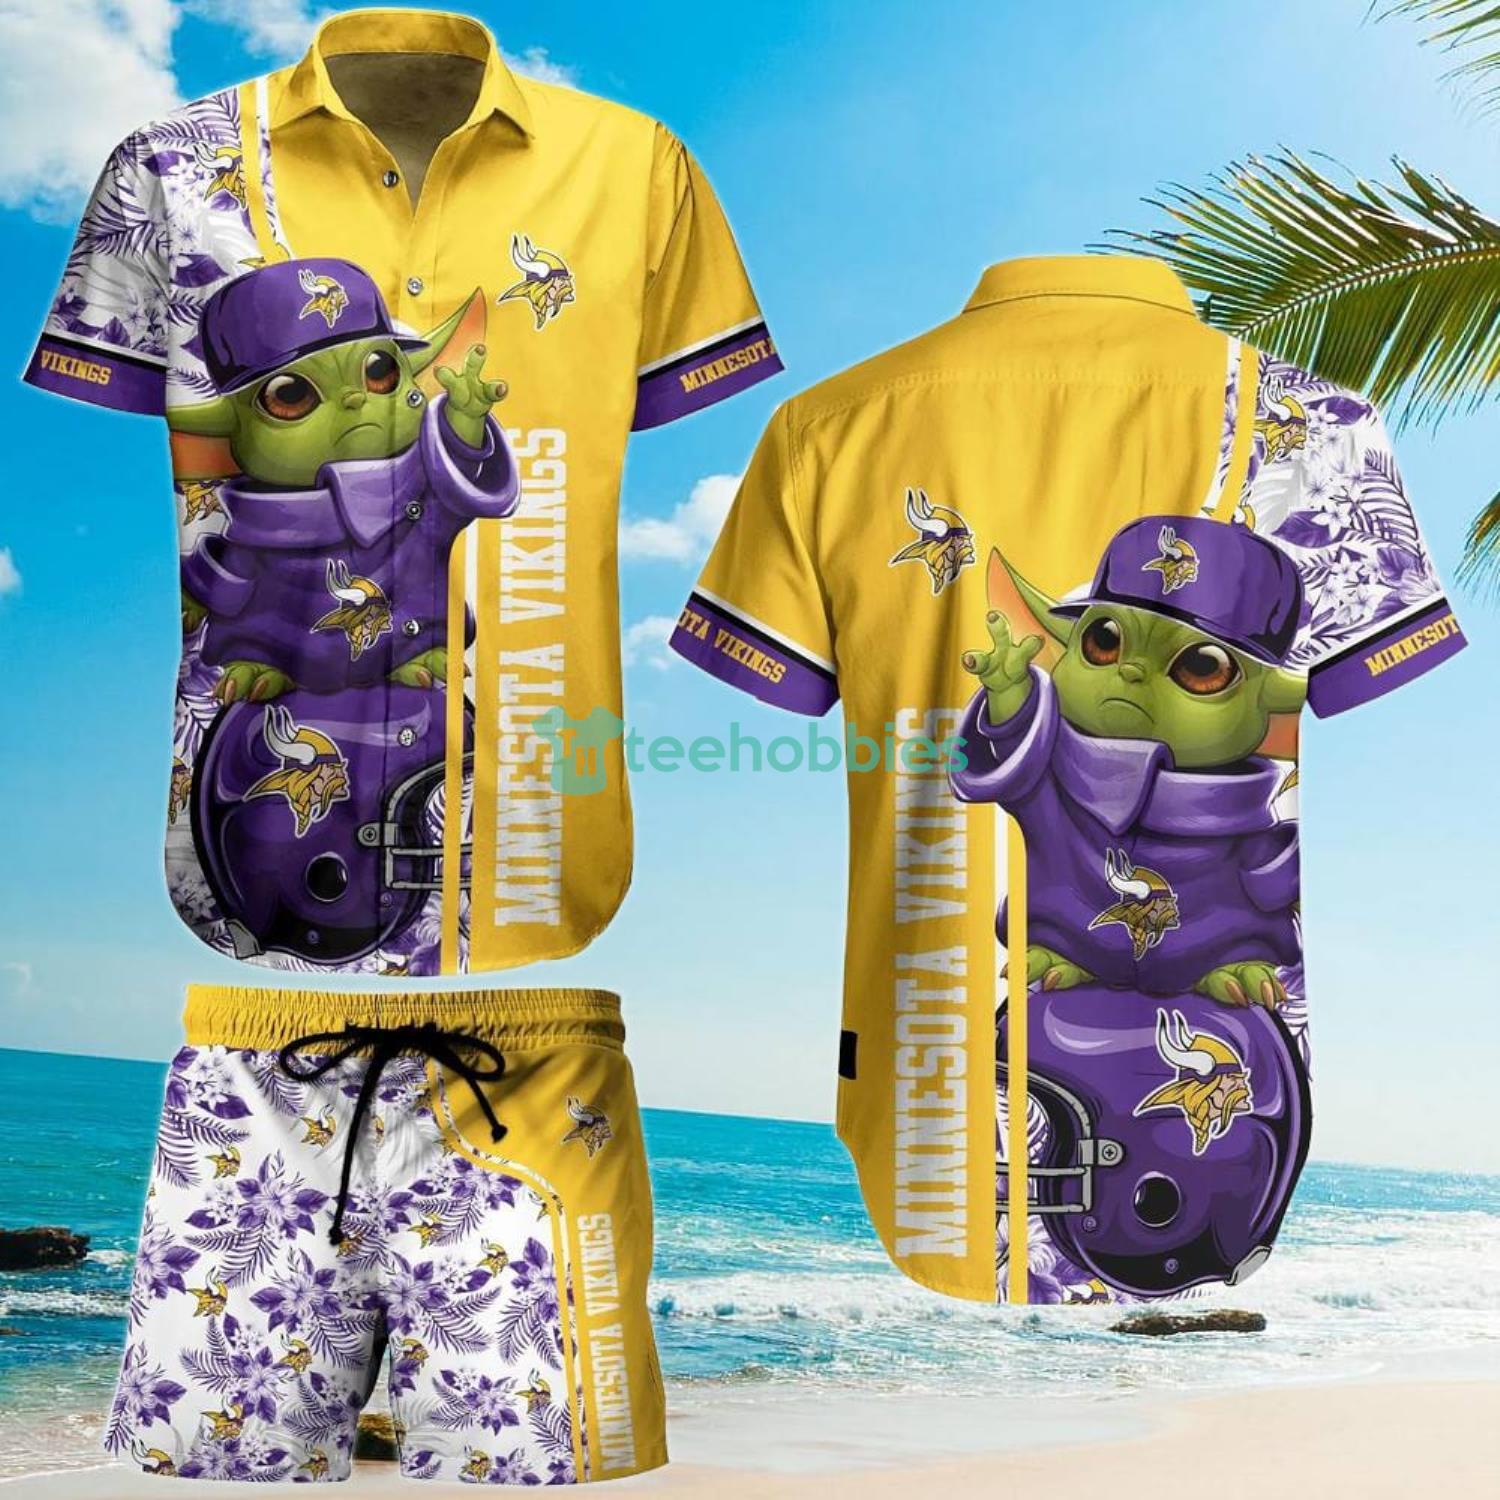 Minnesota Vikings Football NFL Baby Yoda Lover Hawaiian Shirt And Short Product Photo 1